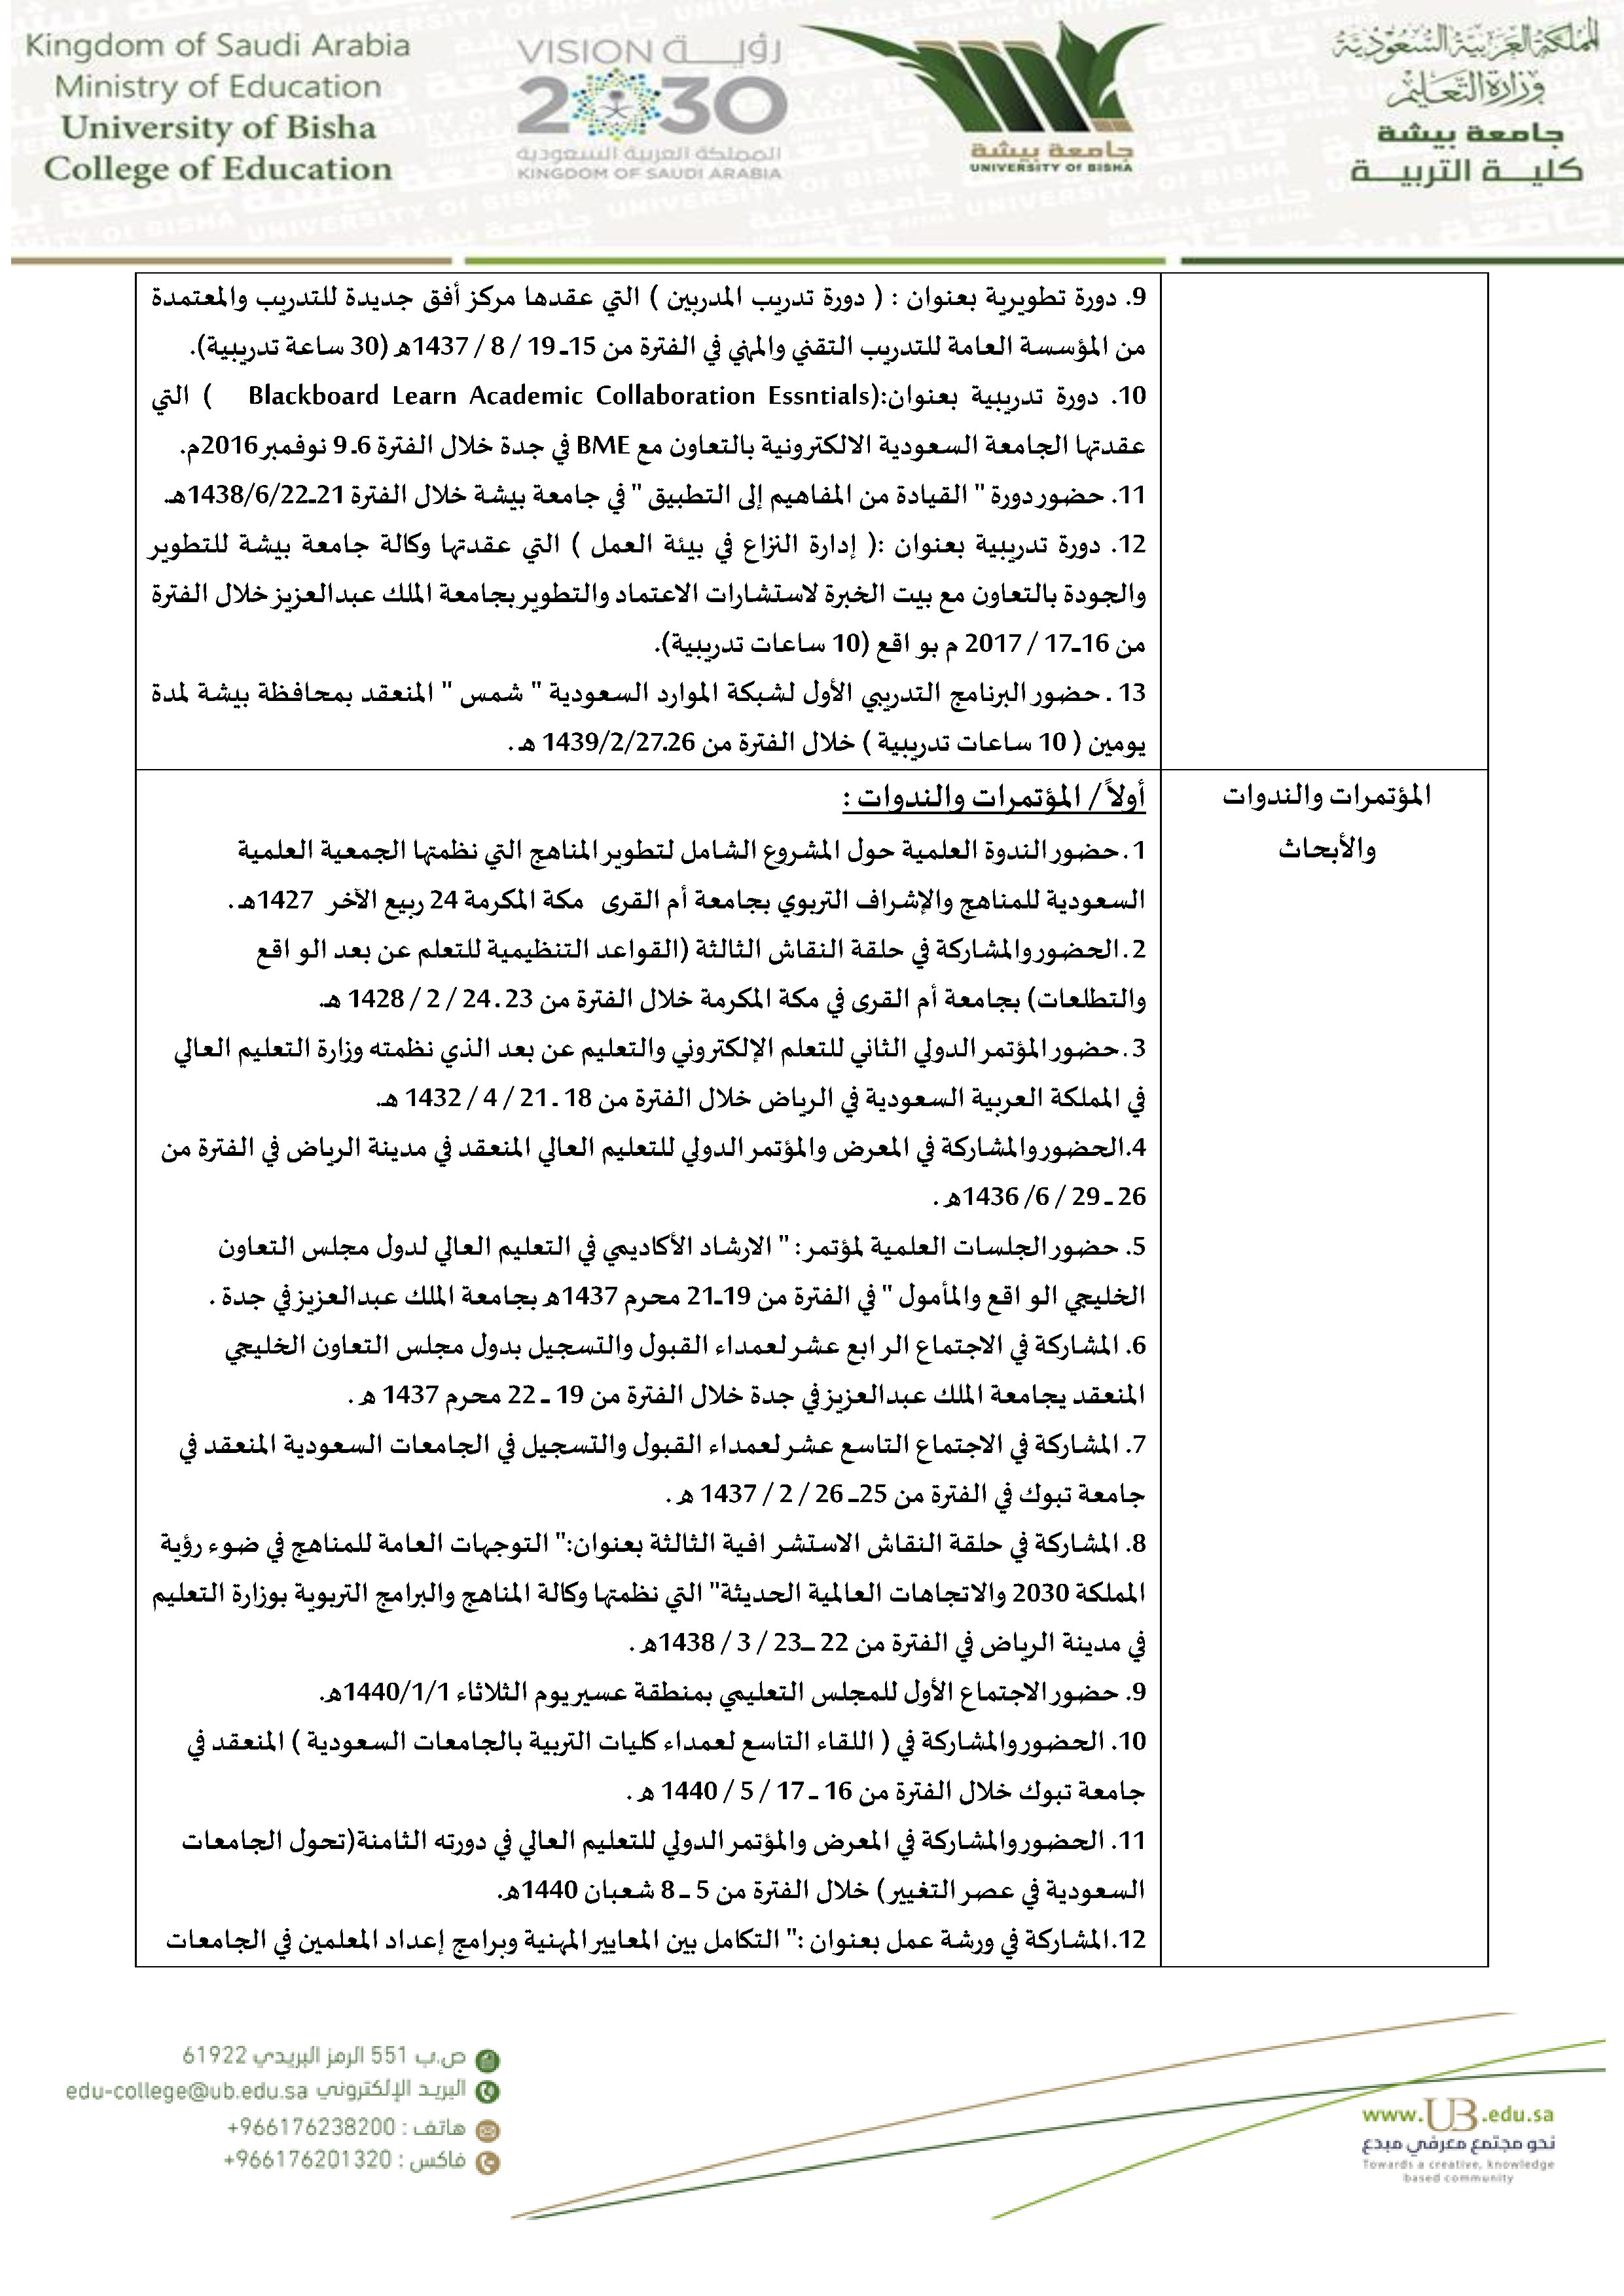 سيرة عميد كلية التربية_Page5.jpg